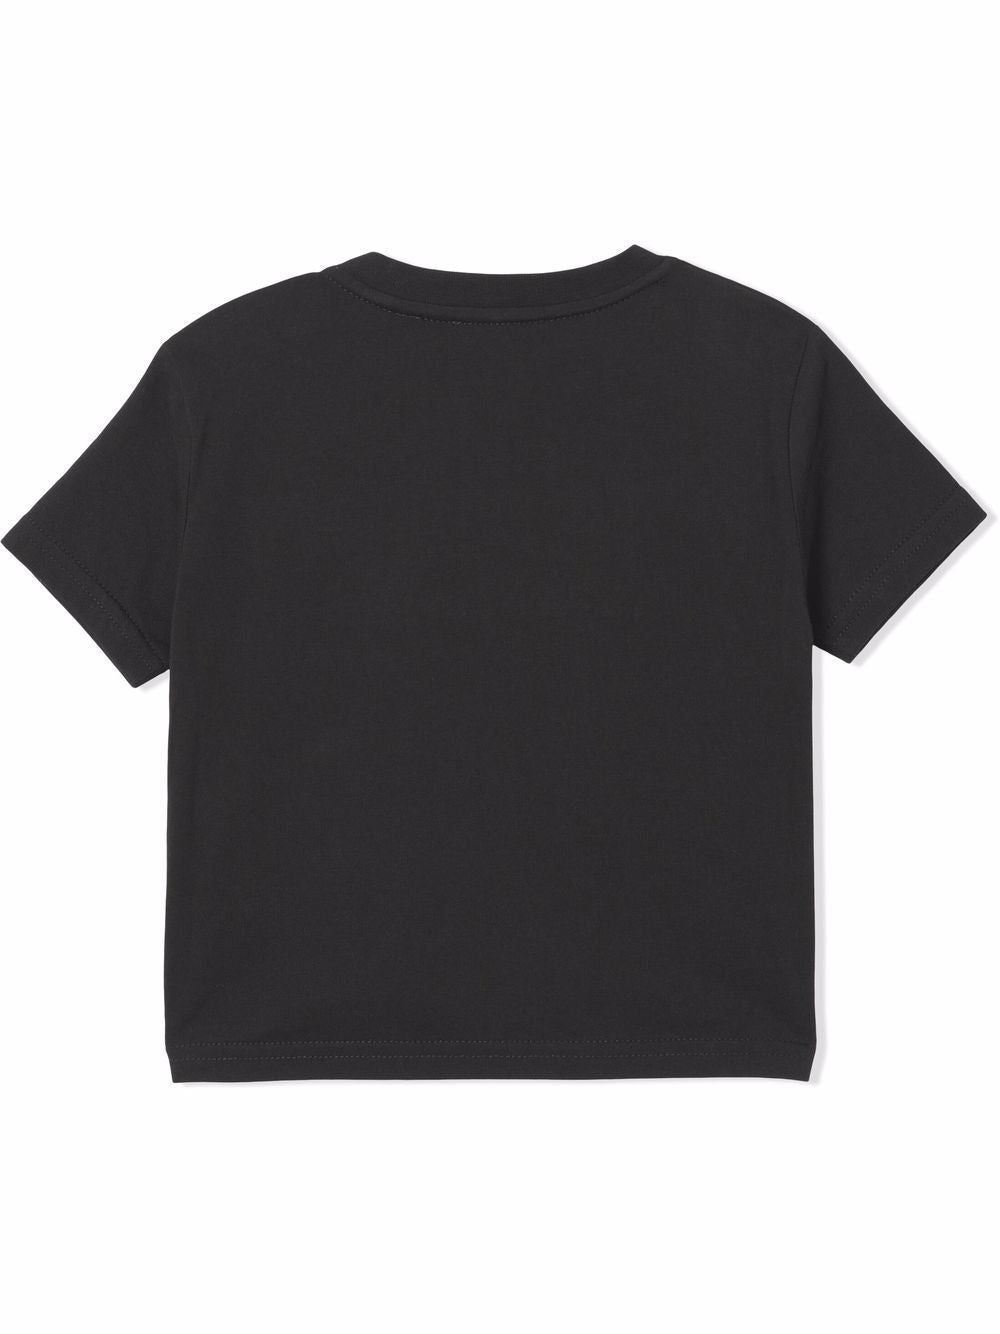 T-shirt in cotone nero con logo ricamato